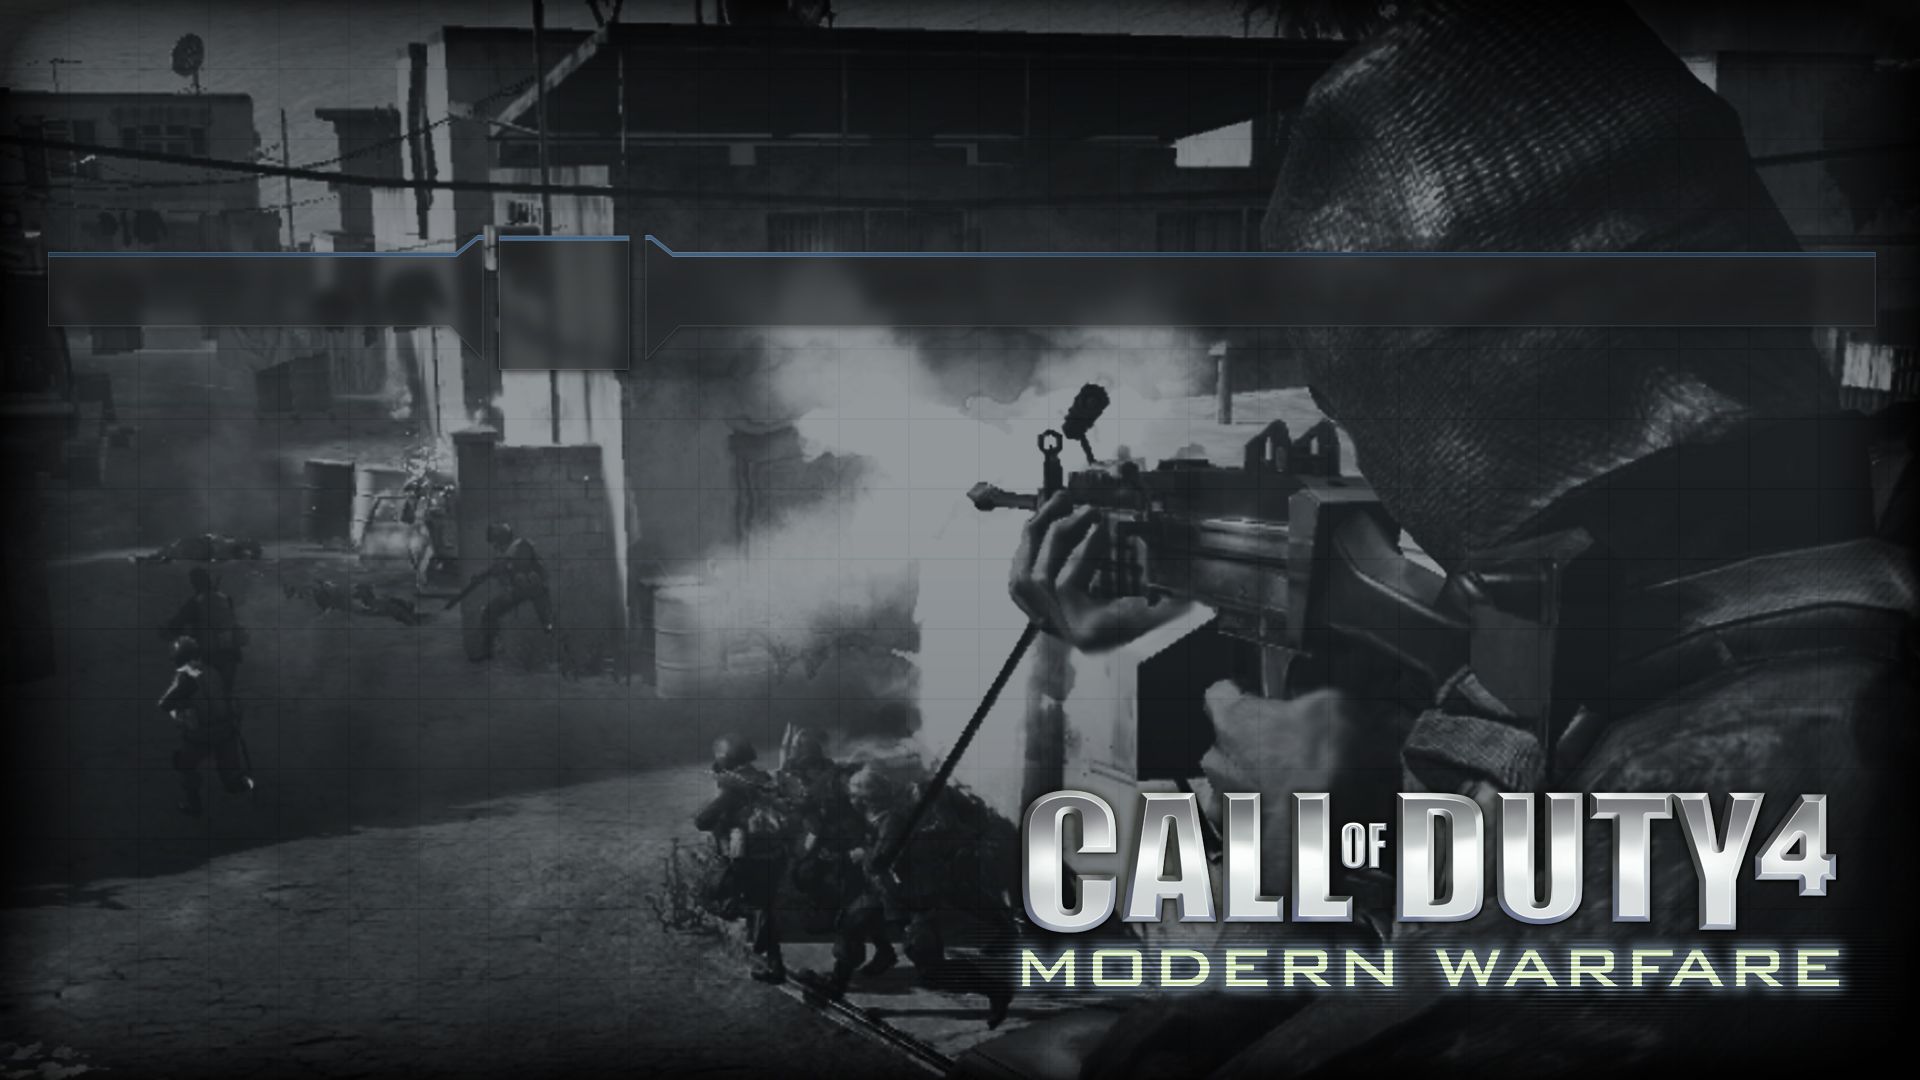 Wide HD COD 4 Modern Warfare Wallpaper. FLGX HD.37 KB